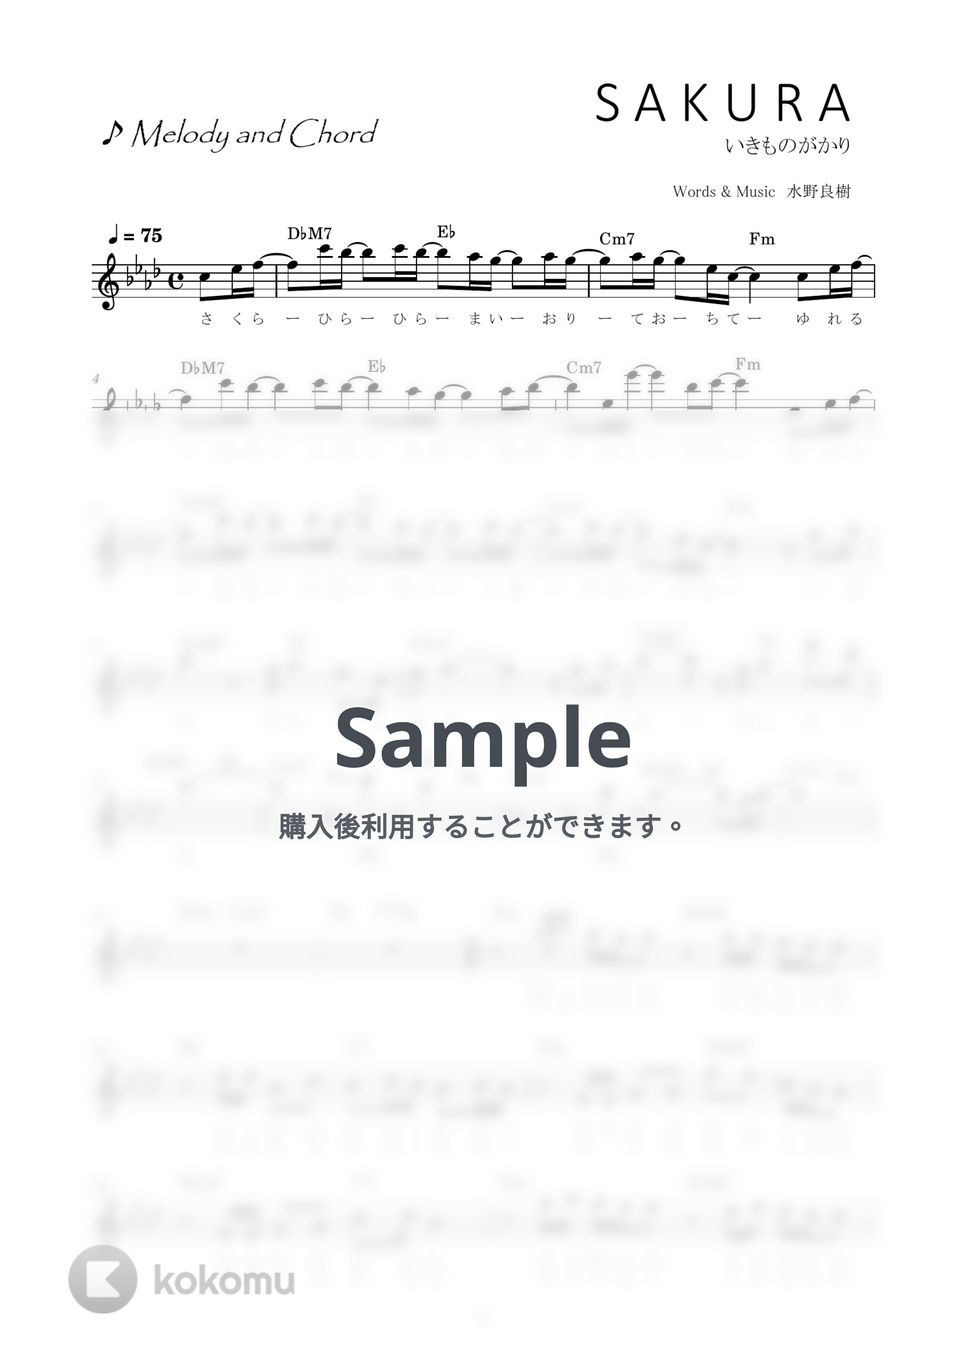 いきものがかり - SAKURA (歌詞コード付メロディ譜) by i blocks